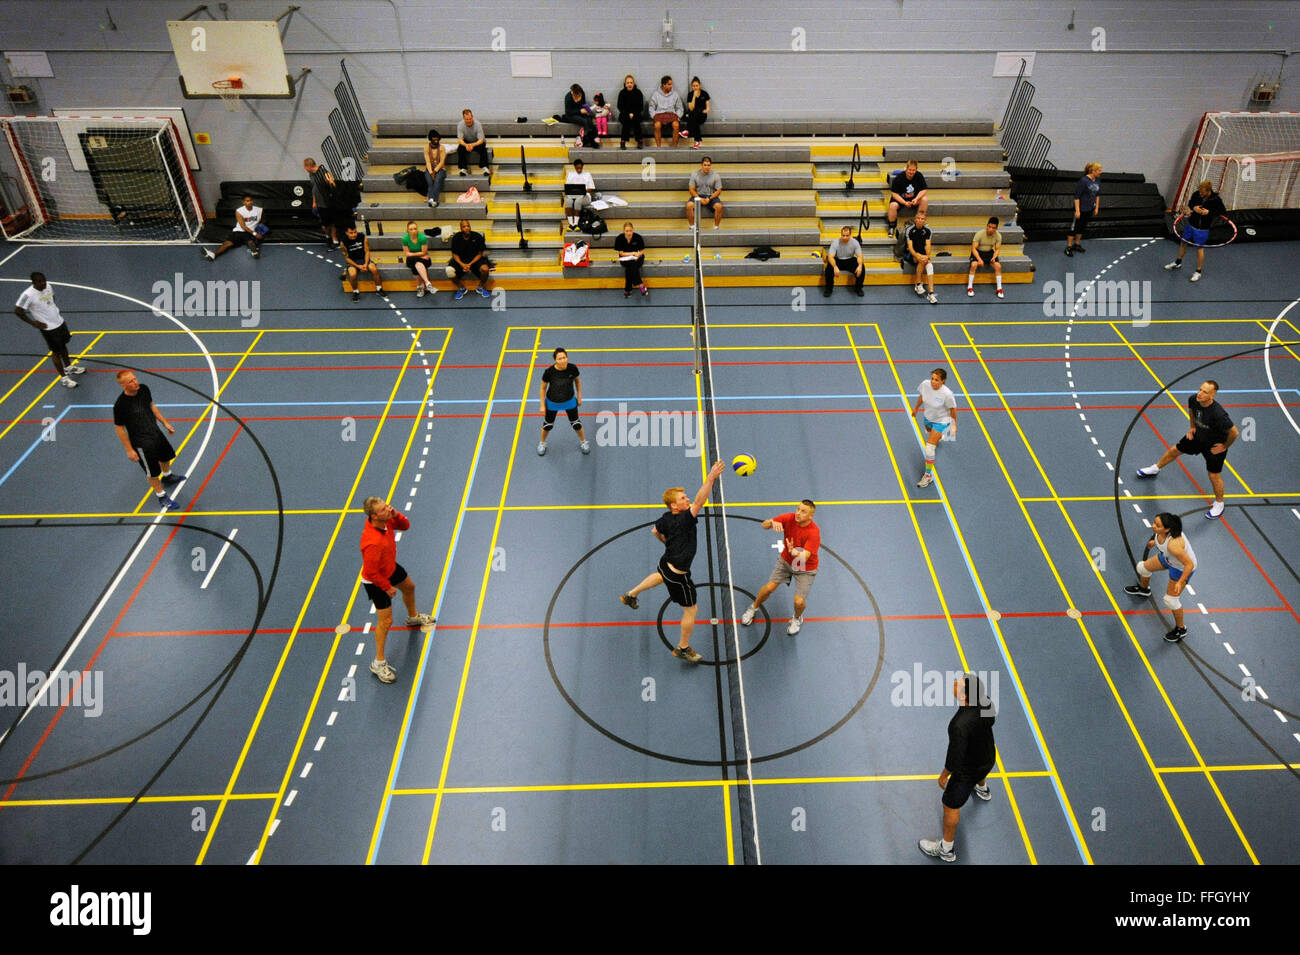 Los aviadores y danés contratistas participar en un torneo de voleibol en el gimnasio AB Thule. Foto de stock